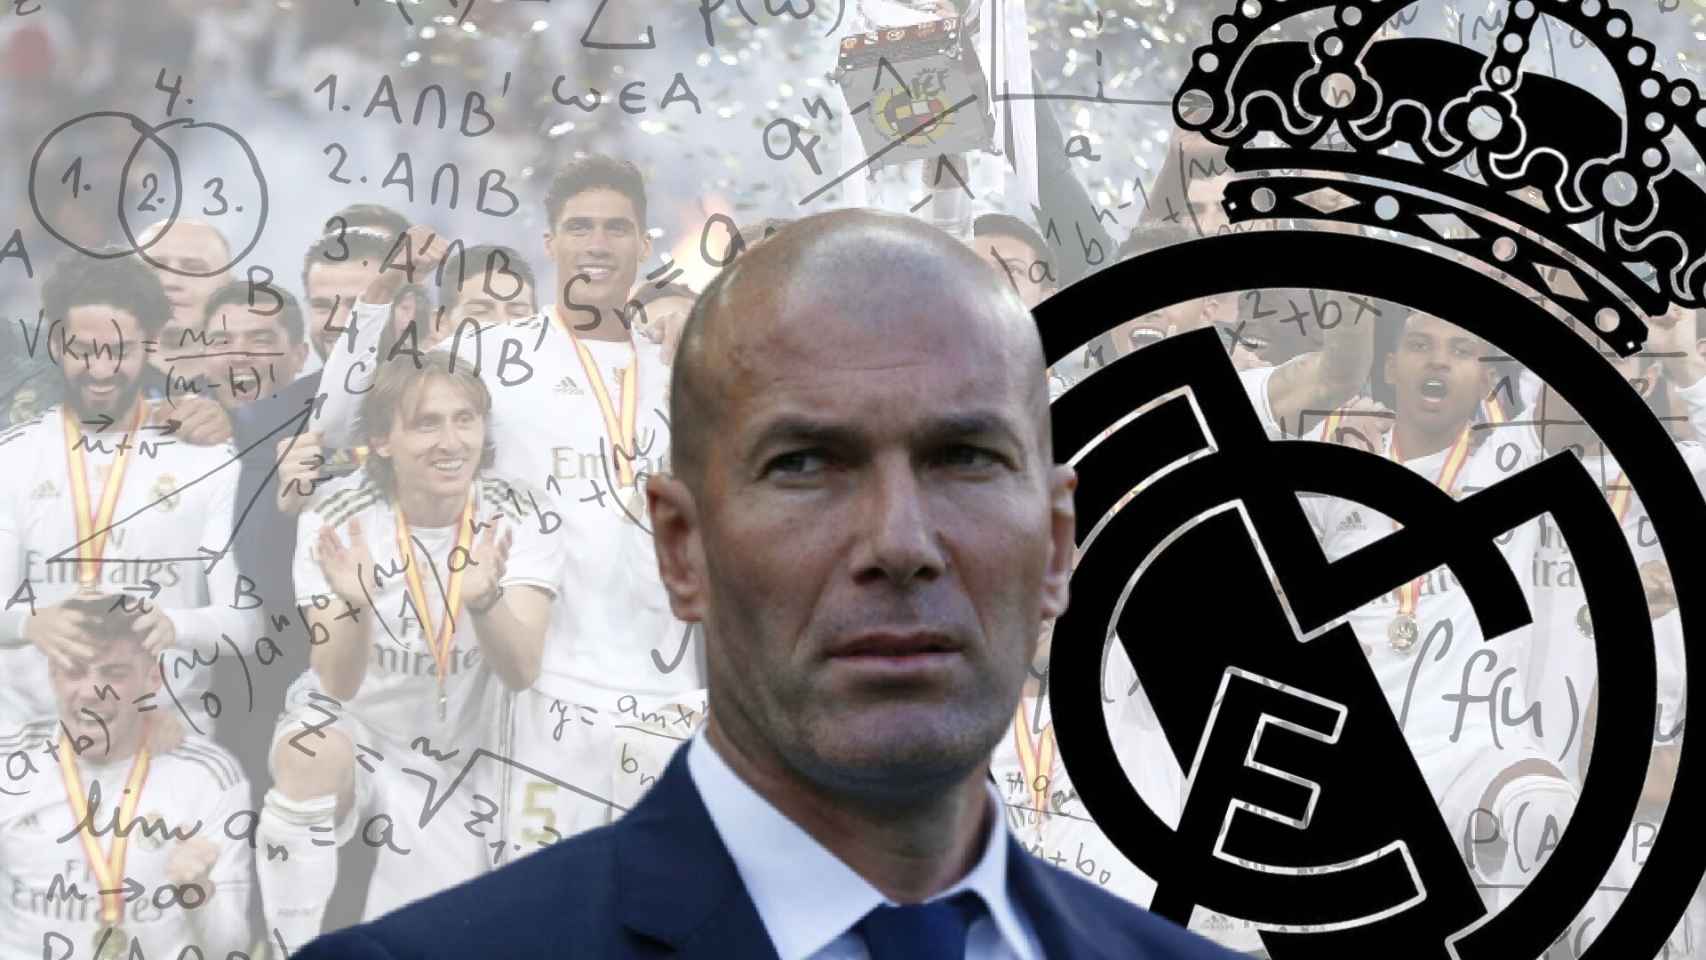 La fórmula del 25 de Zidane: todos son importantes en el Real Madrid